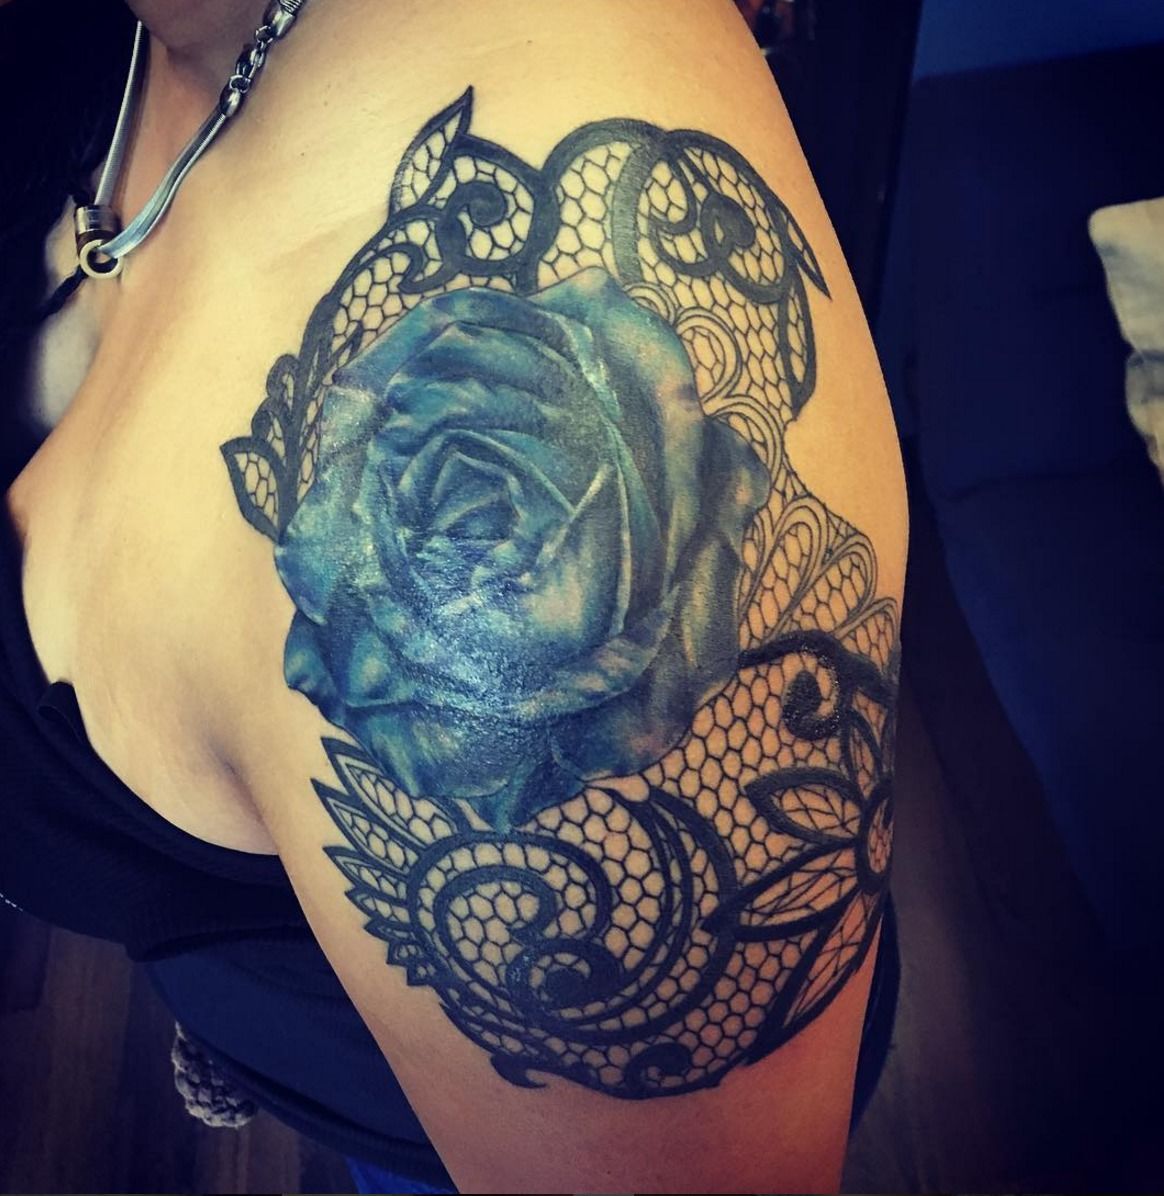 blue rose tattoo on shoulder